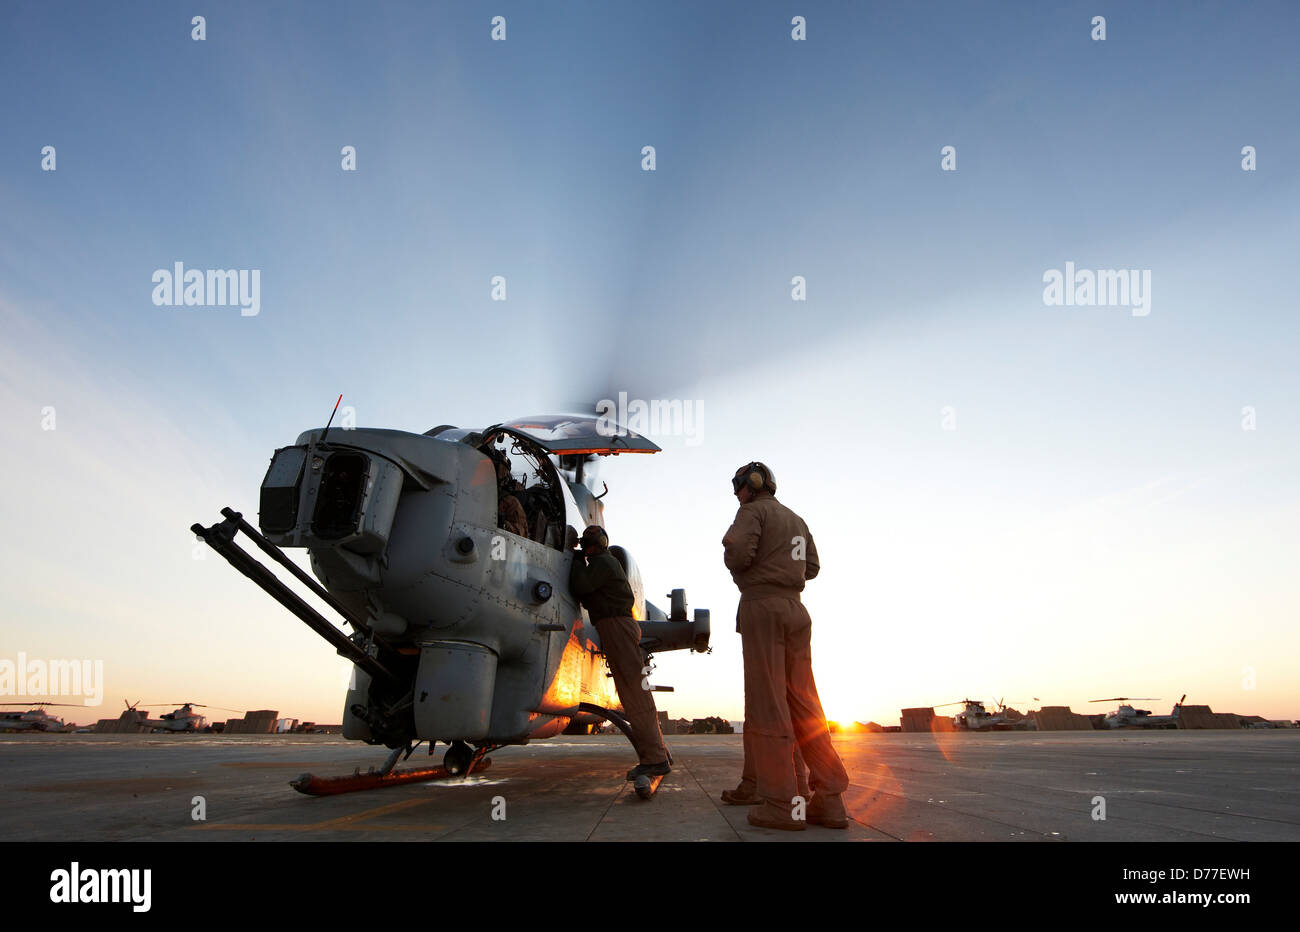 United States Marine Corps d'aviateurs de l'équipe au sol se préparent à lancer AH-1W SuperCobra hélicoptère d'attaque sur l'opération de combat en Banque D'Images